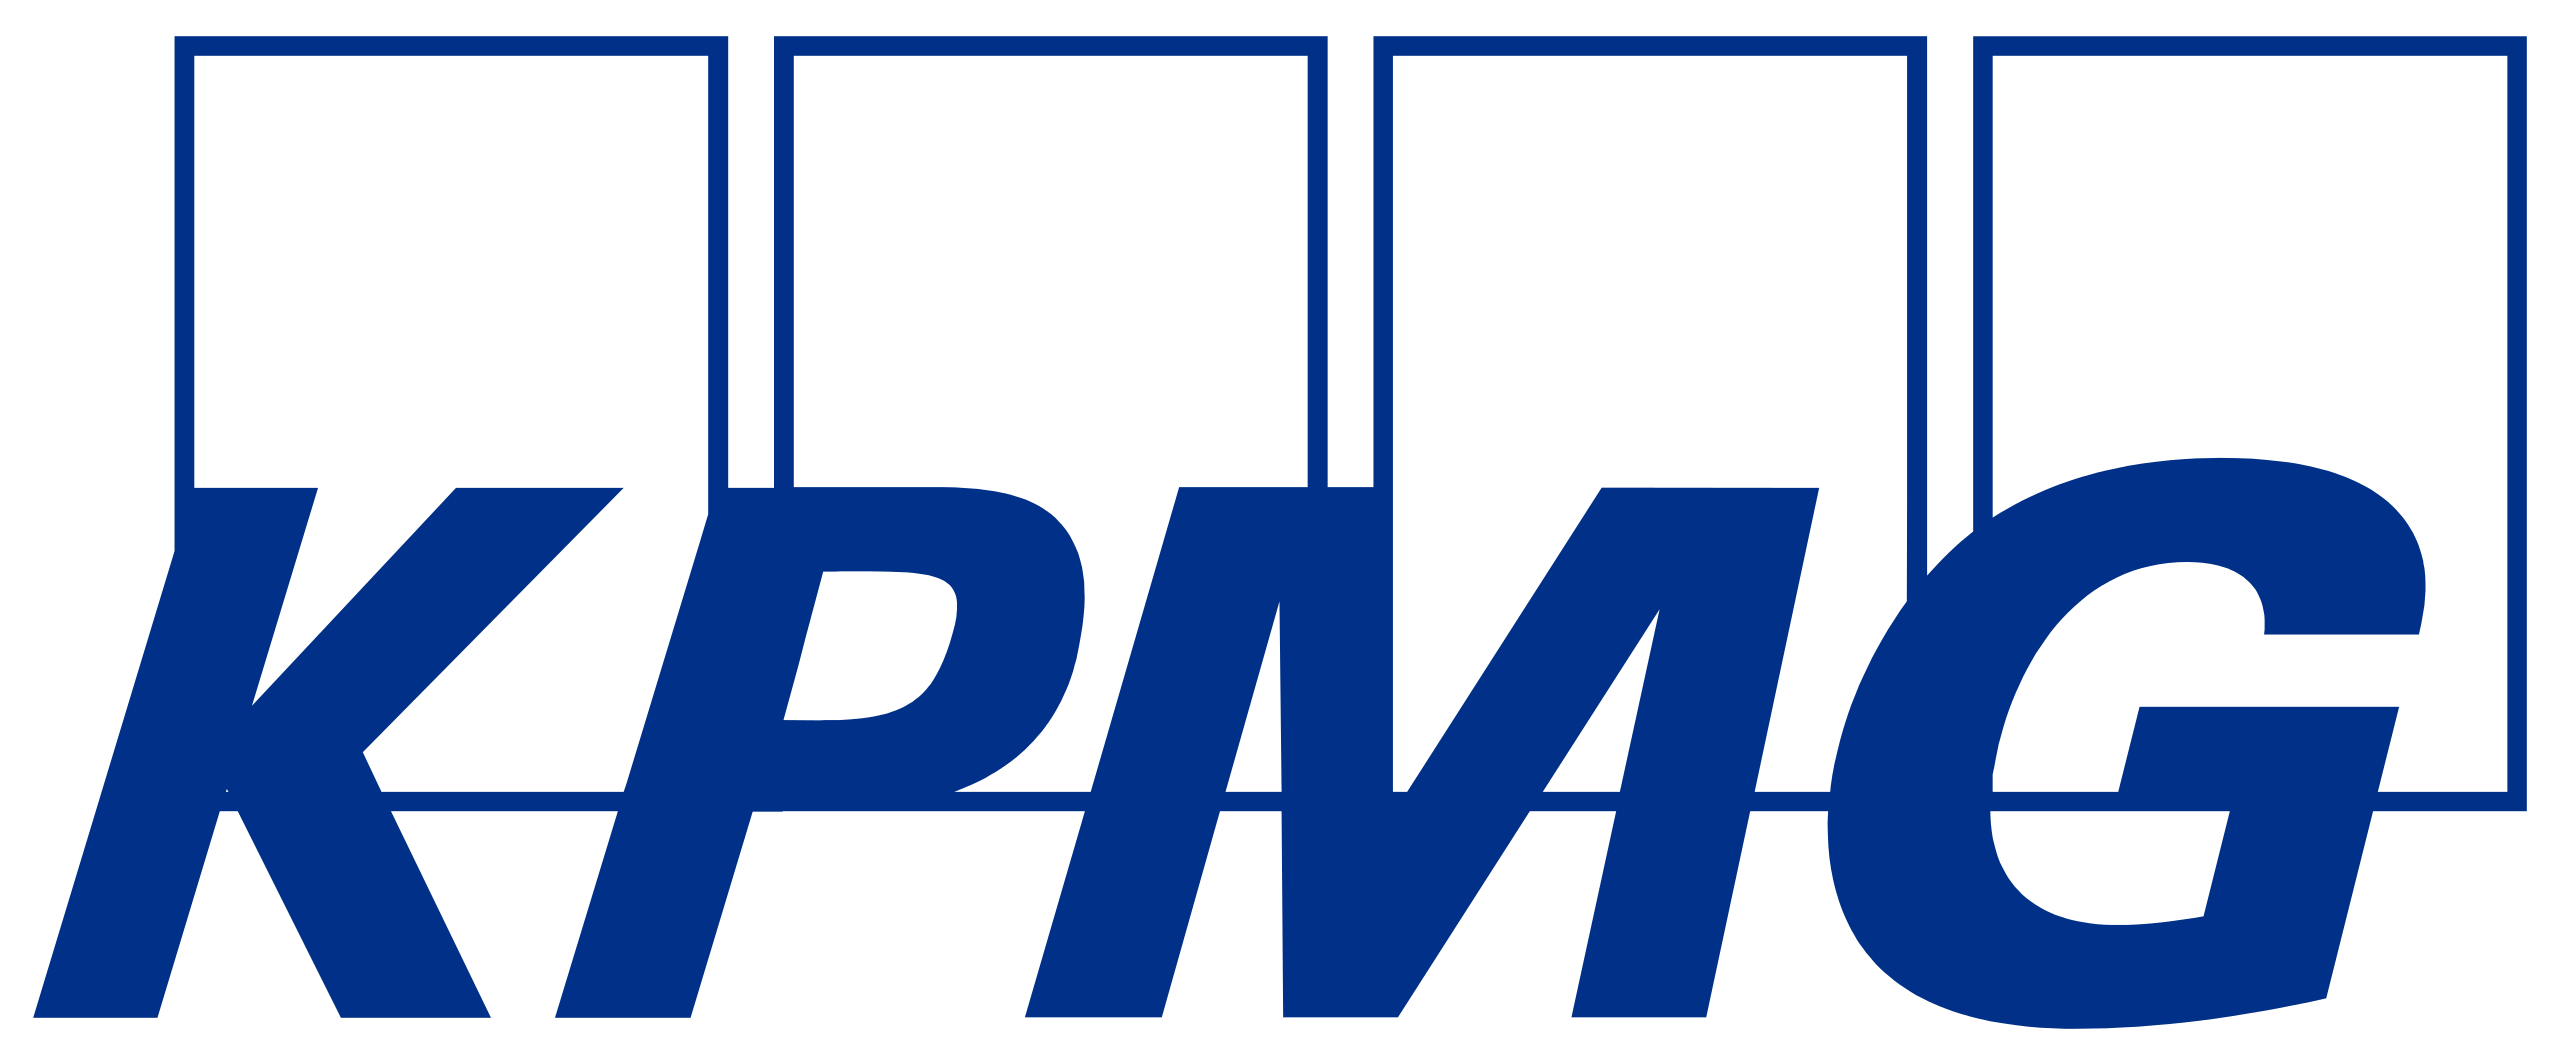 2560px-KPMG_logo.svg (1).png